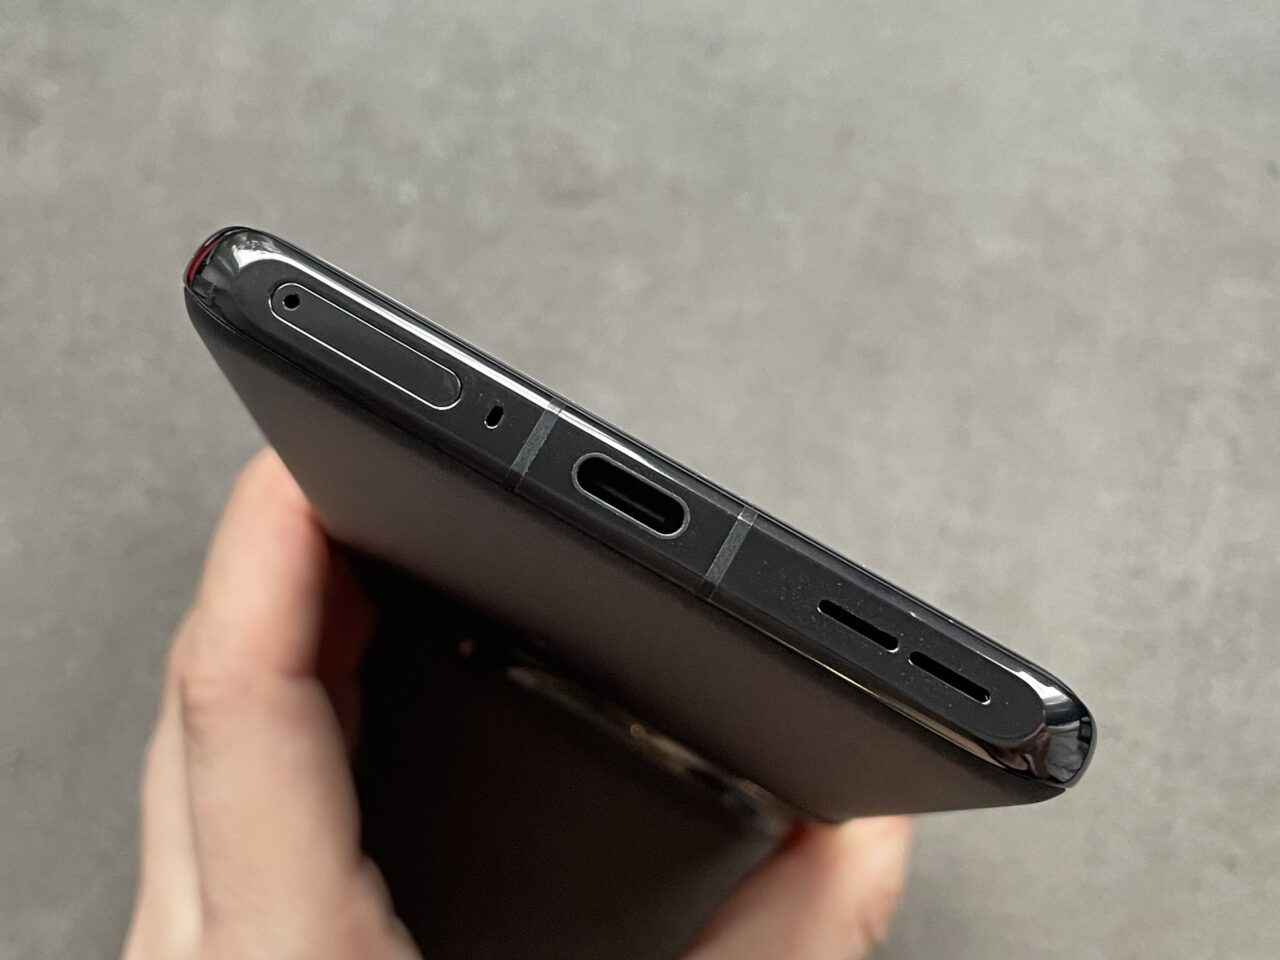 Przytrzymywany w dłoni czarny smartfon z widocznym górnym brzegiem, na którym znajdują się głośnik, port ładowania USB-C, mikrofon i złącze słuchawkowe.